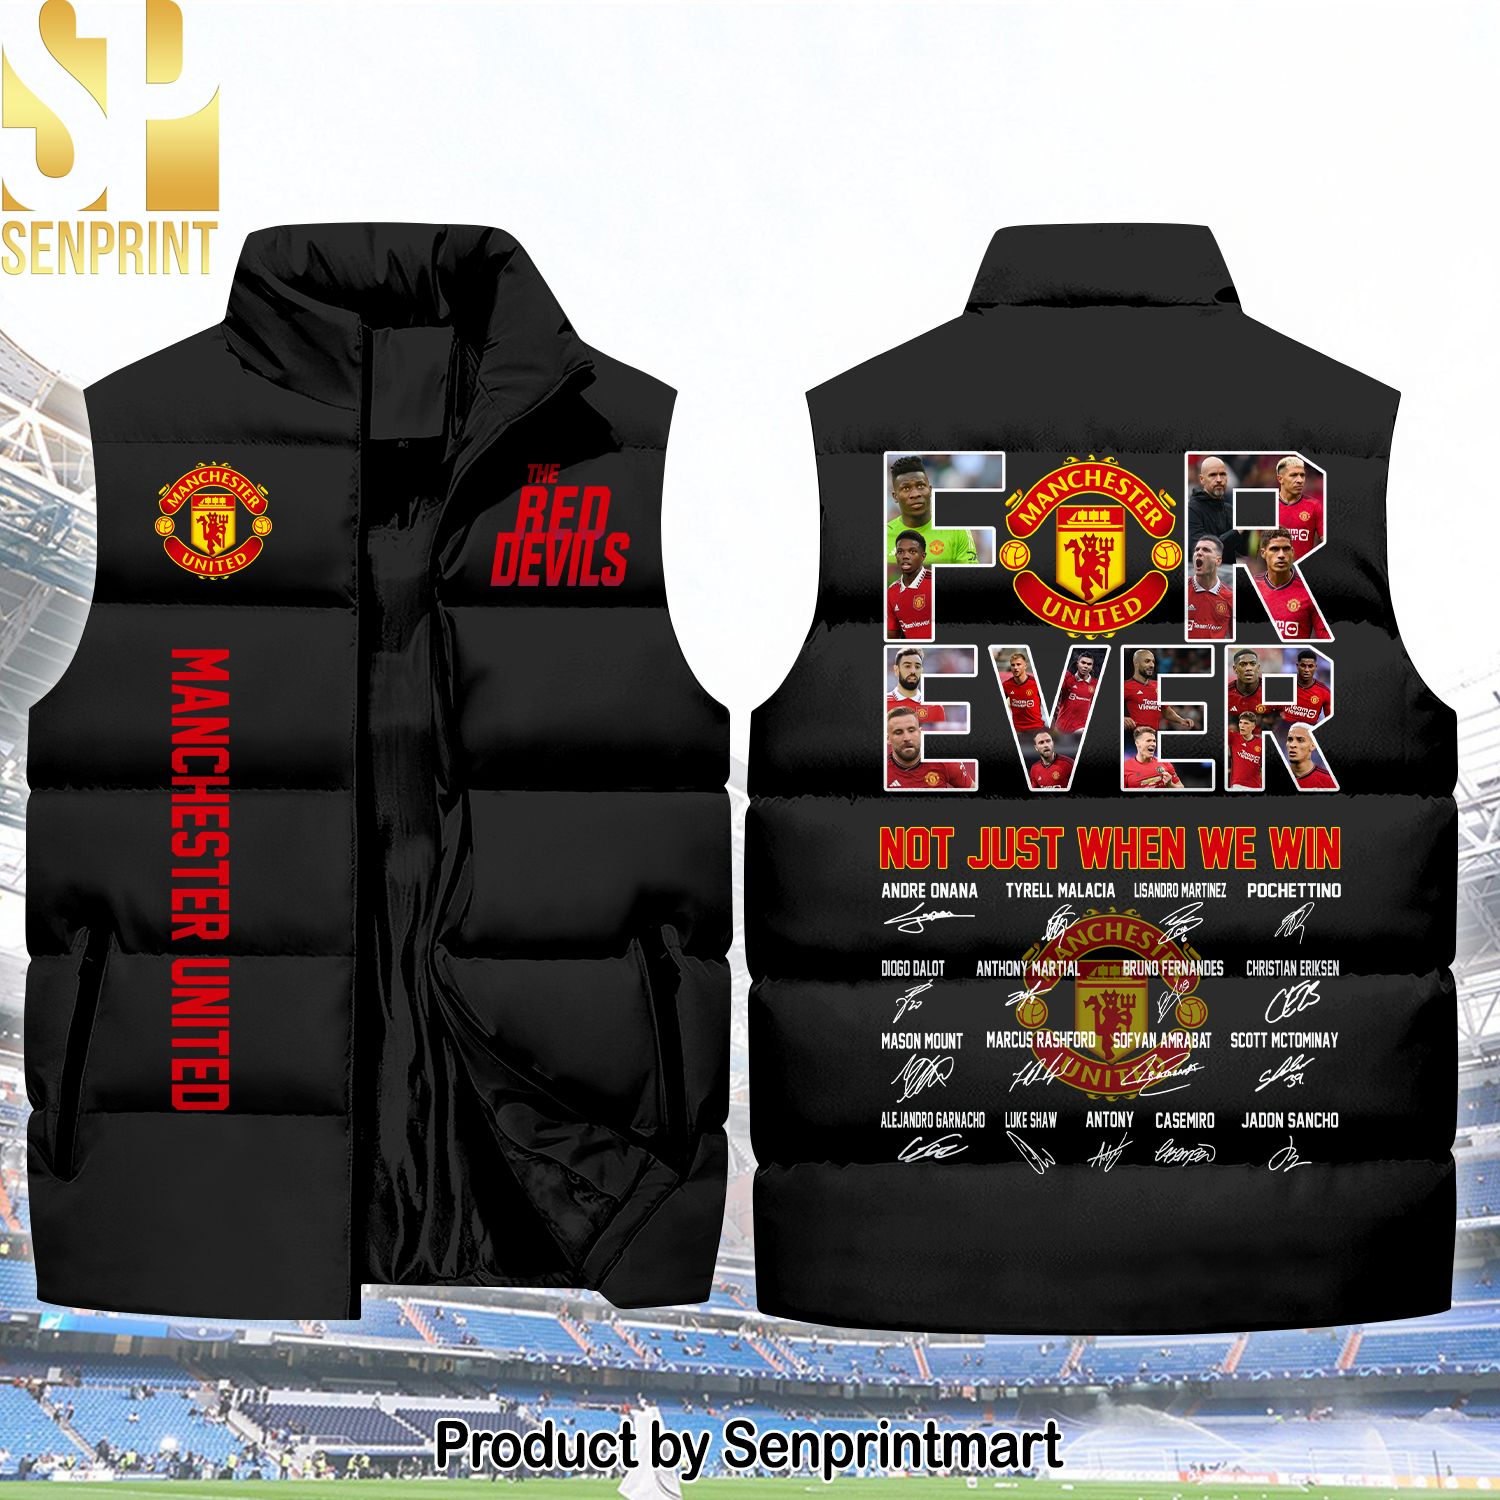 English Premier League Forever Manchester United Unisex Sleeveless Jacket